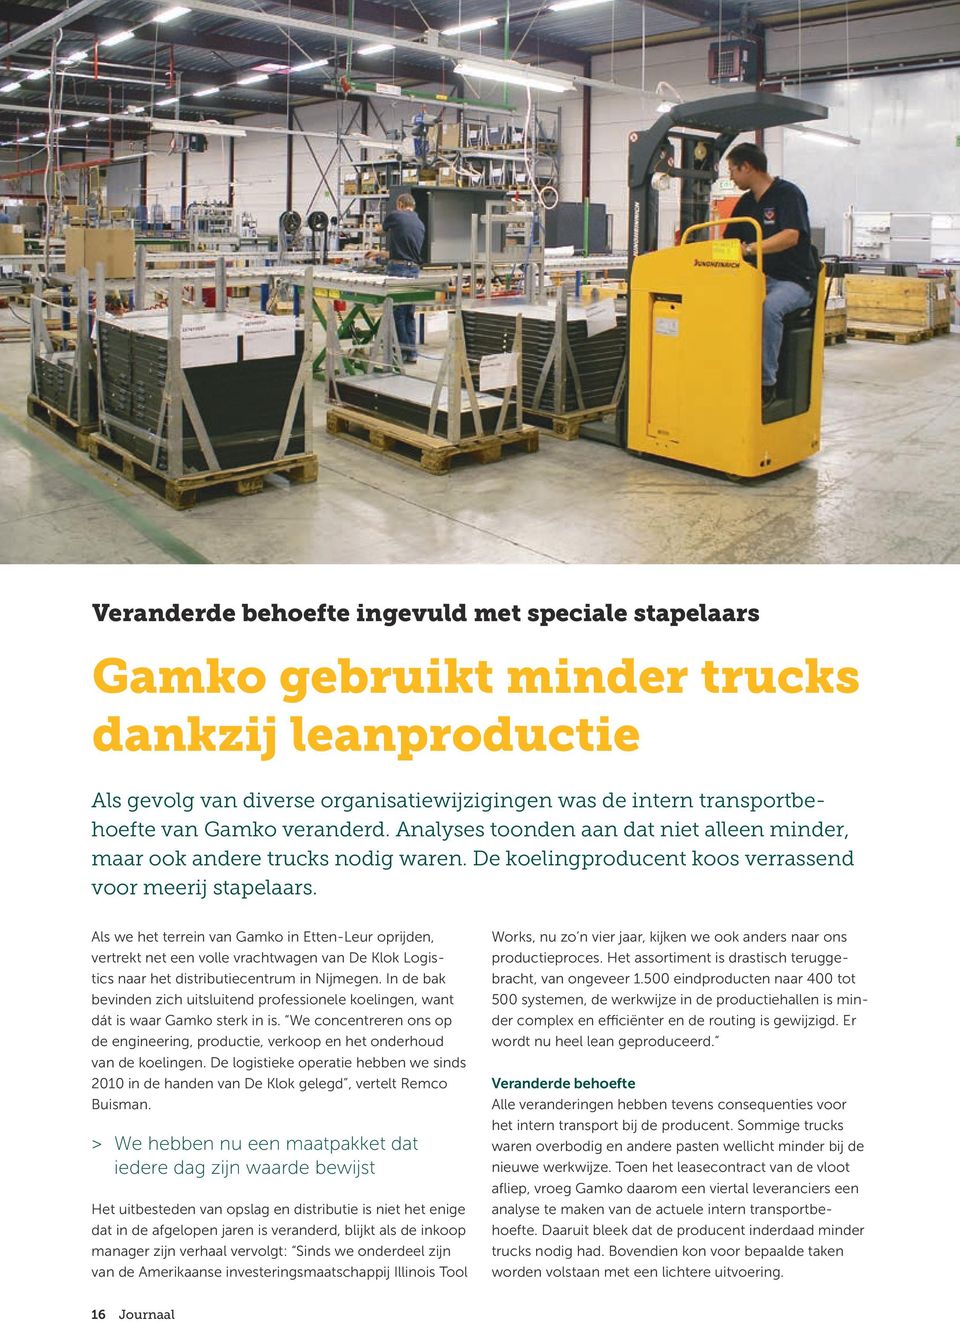 Als we het terrein van Gamko in Etten-Leur oprijden, vertrekt net een volle vrachtwagen van De Klok Logistics naar het distributiecentrum in Nijmegen.